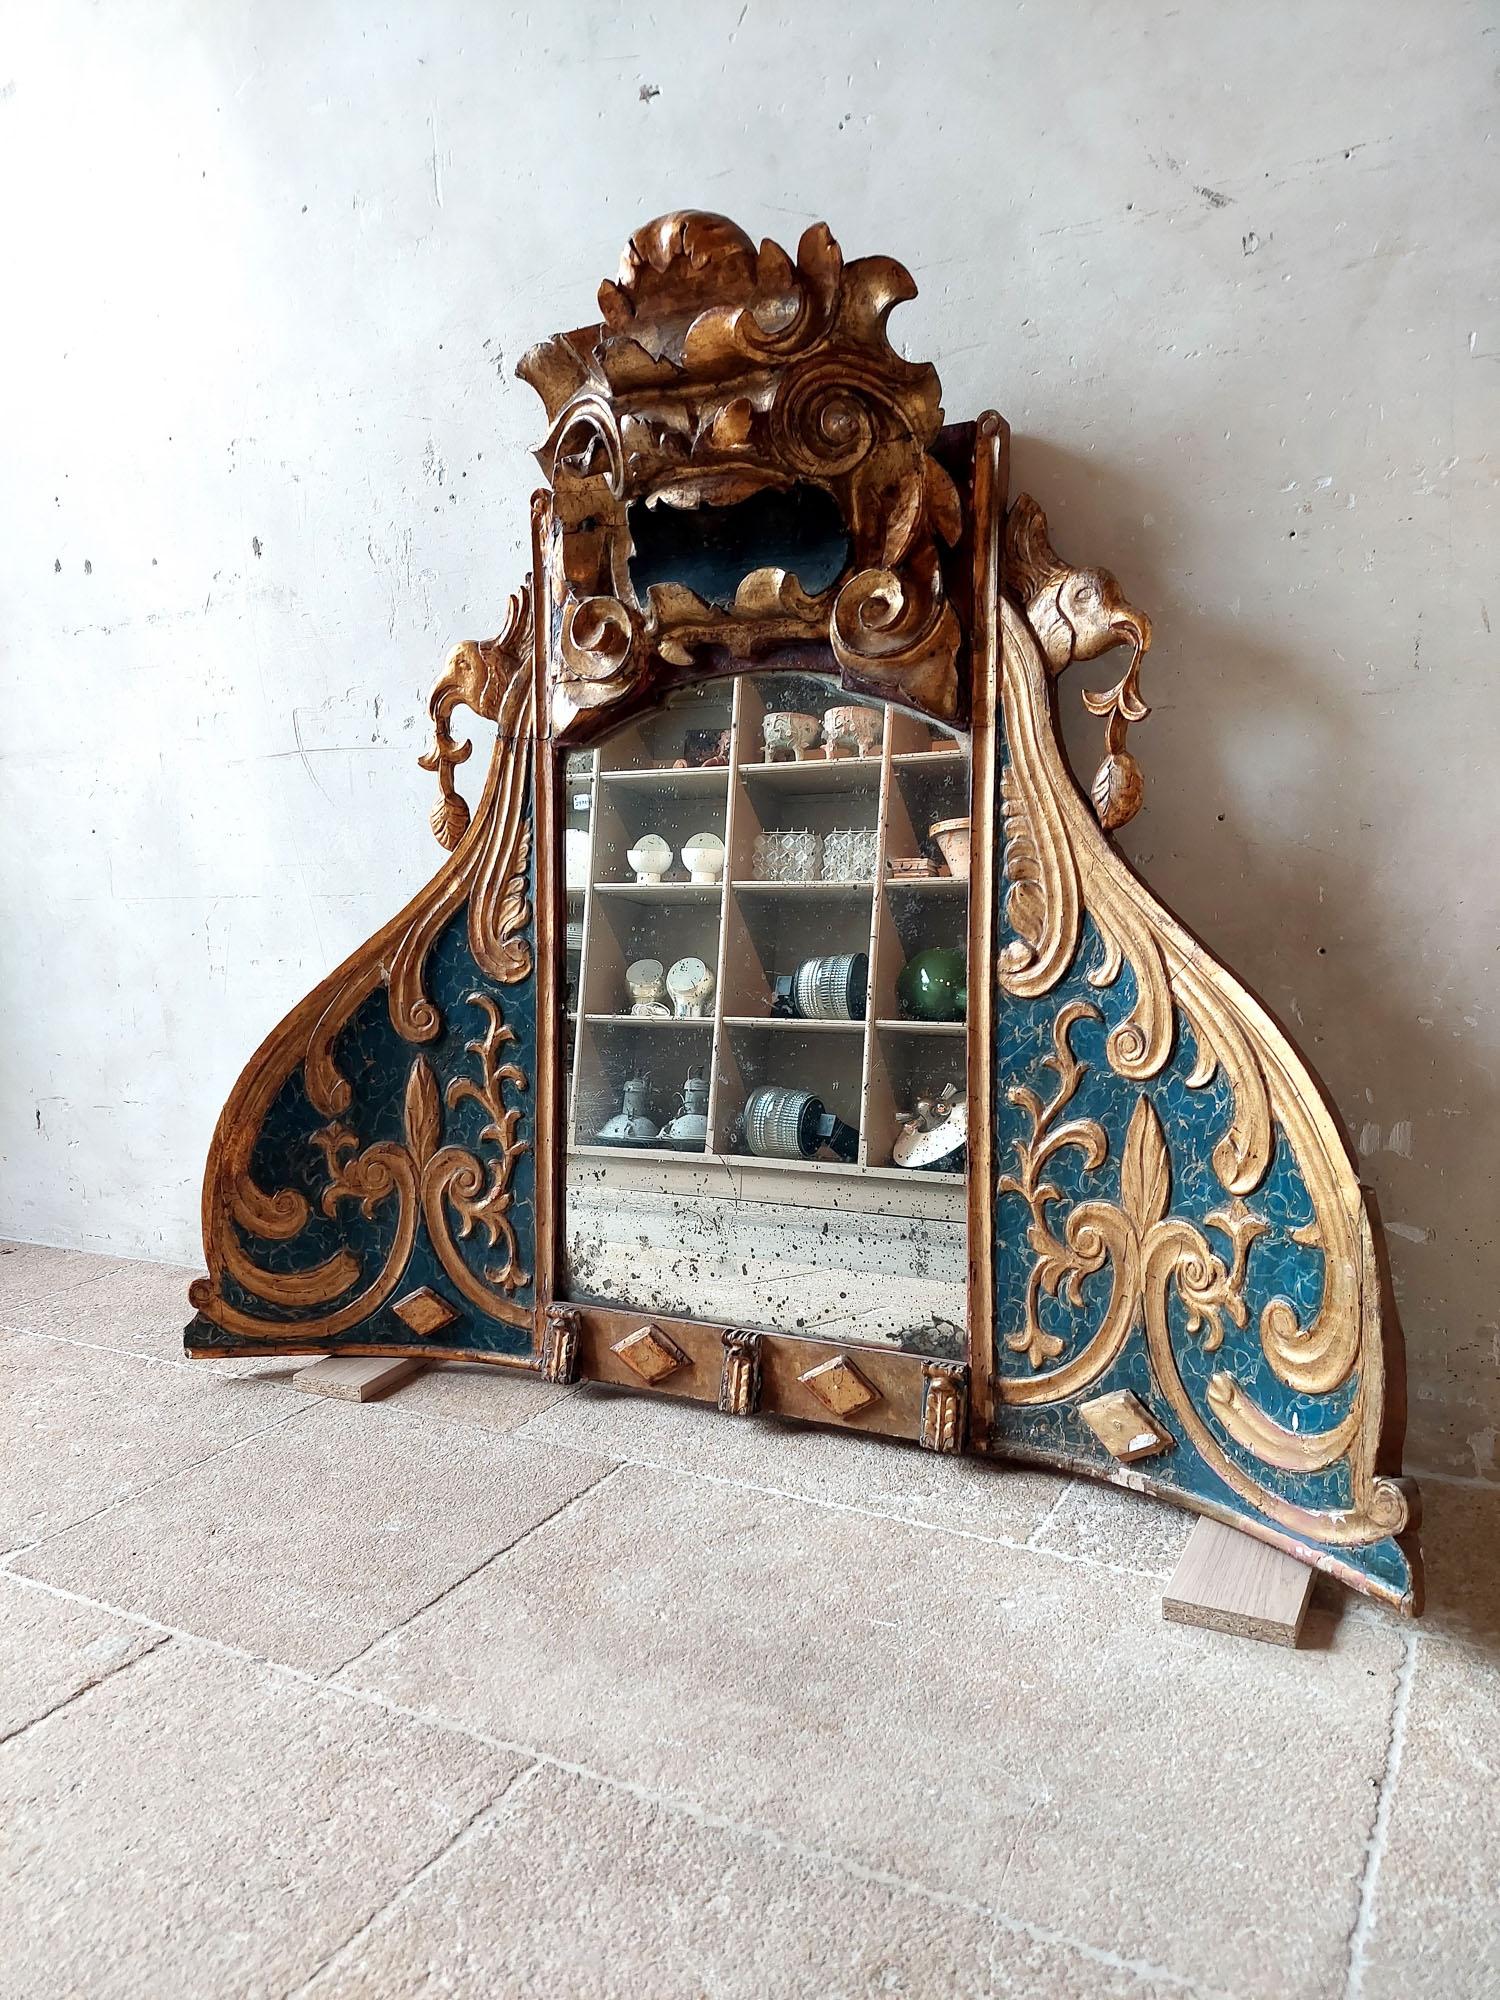 Dieser einzigartige und besondere Spiegel ist aus einer italienischen Kirchennische aus dem 18. Jahrhundert gefertigt. Der holzgeschnitzte Rahmen hat eine leicht konkave Form und ist mit anmutigen Verzierungen wie C-förmigen Locken, Rauten, Blättern